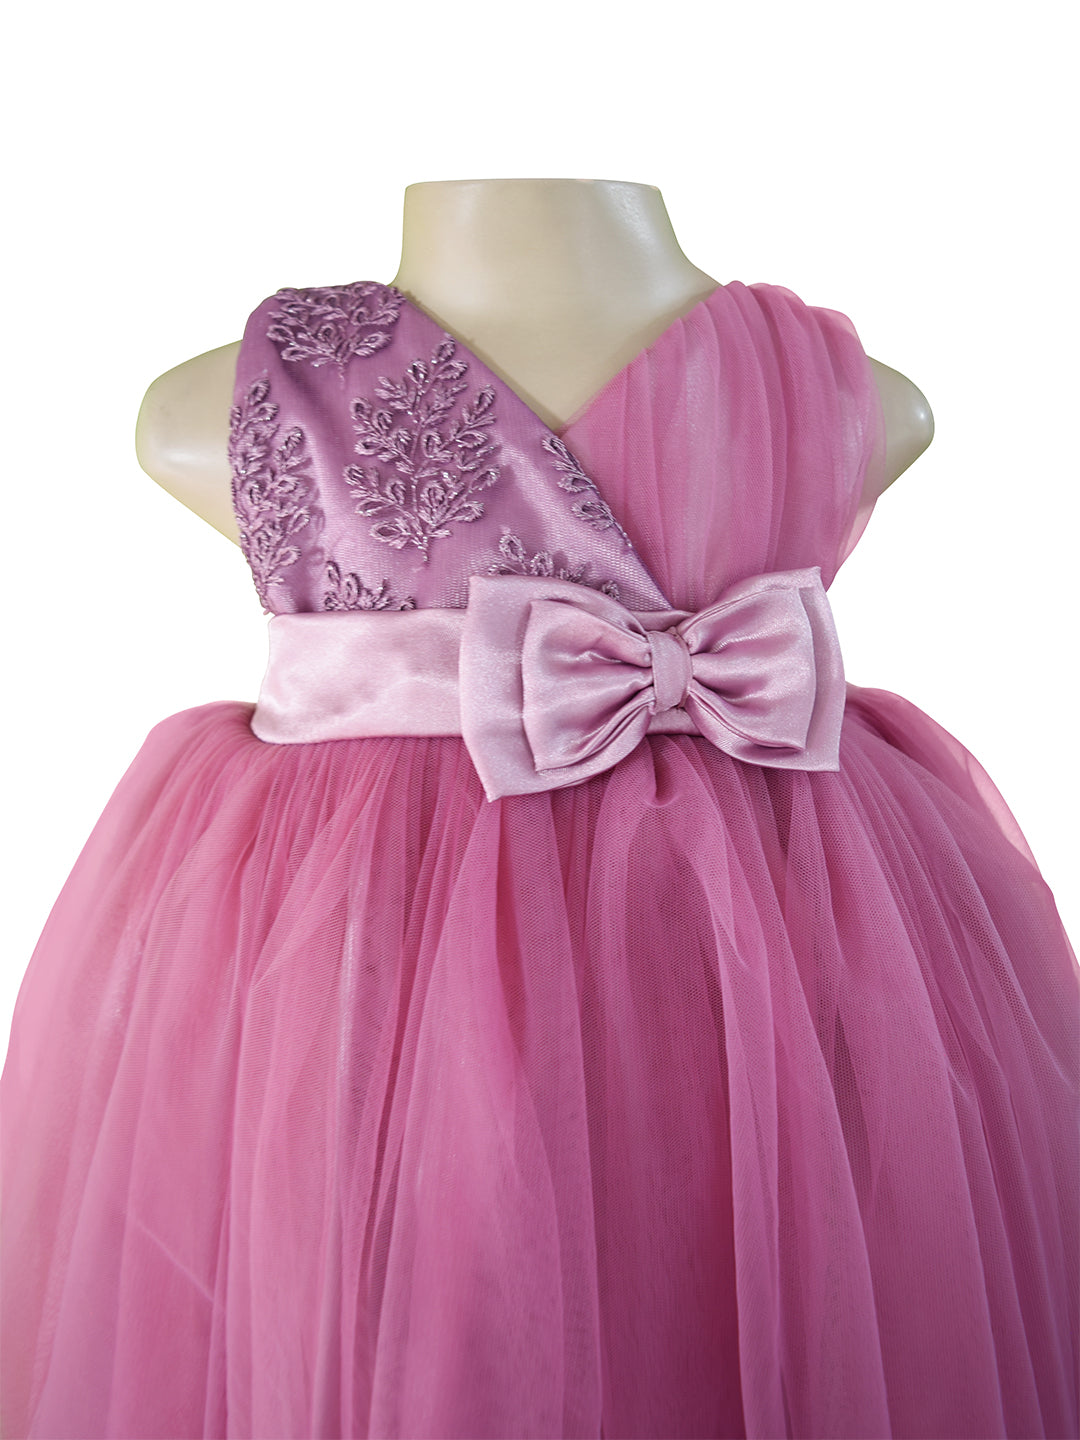 Unicorn Party Dresses for Kids | Unicorn Dress for Girls Online -  Foreverkidz